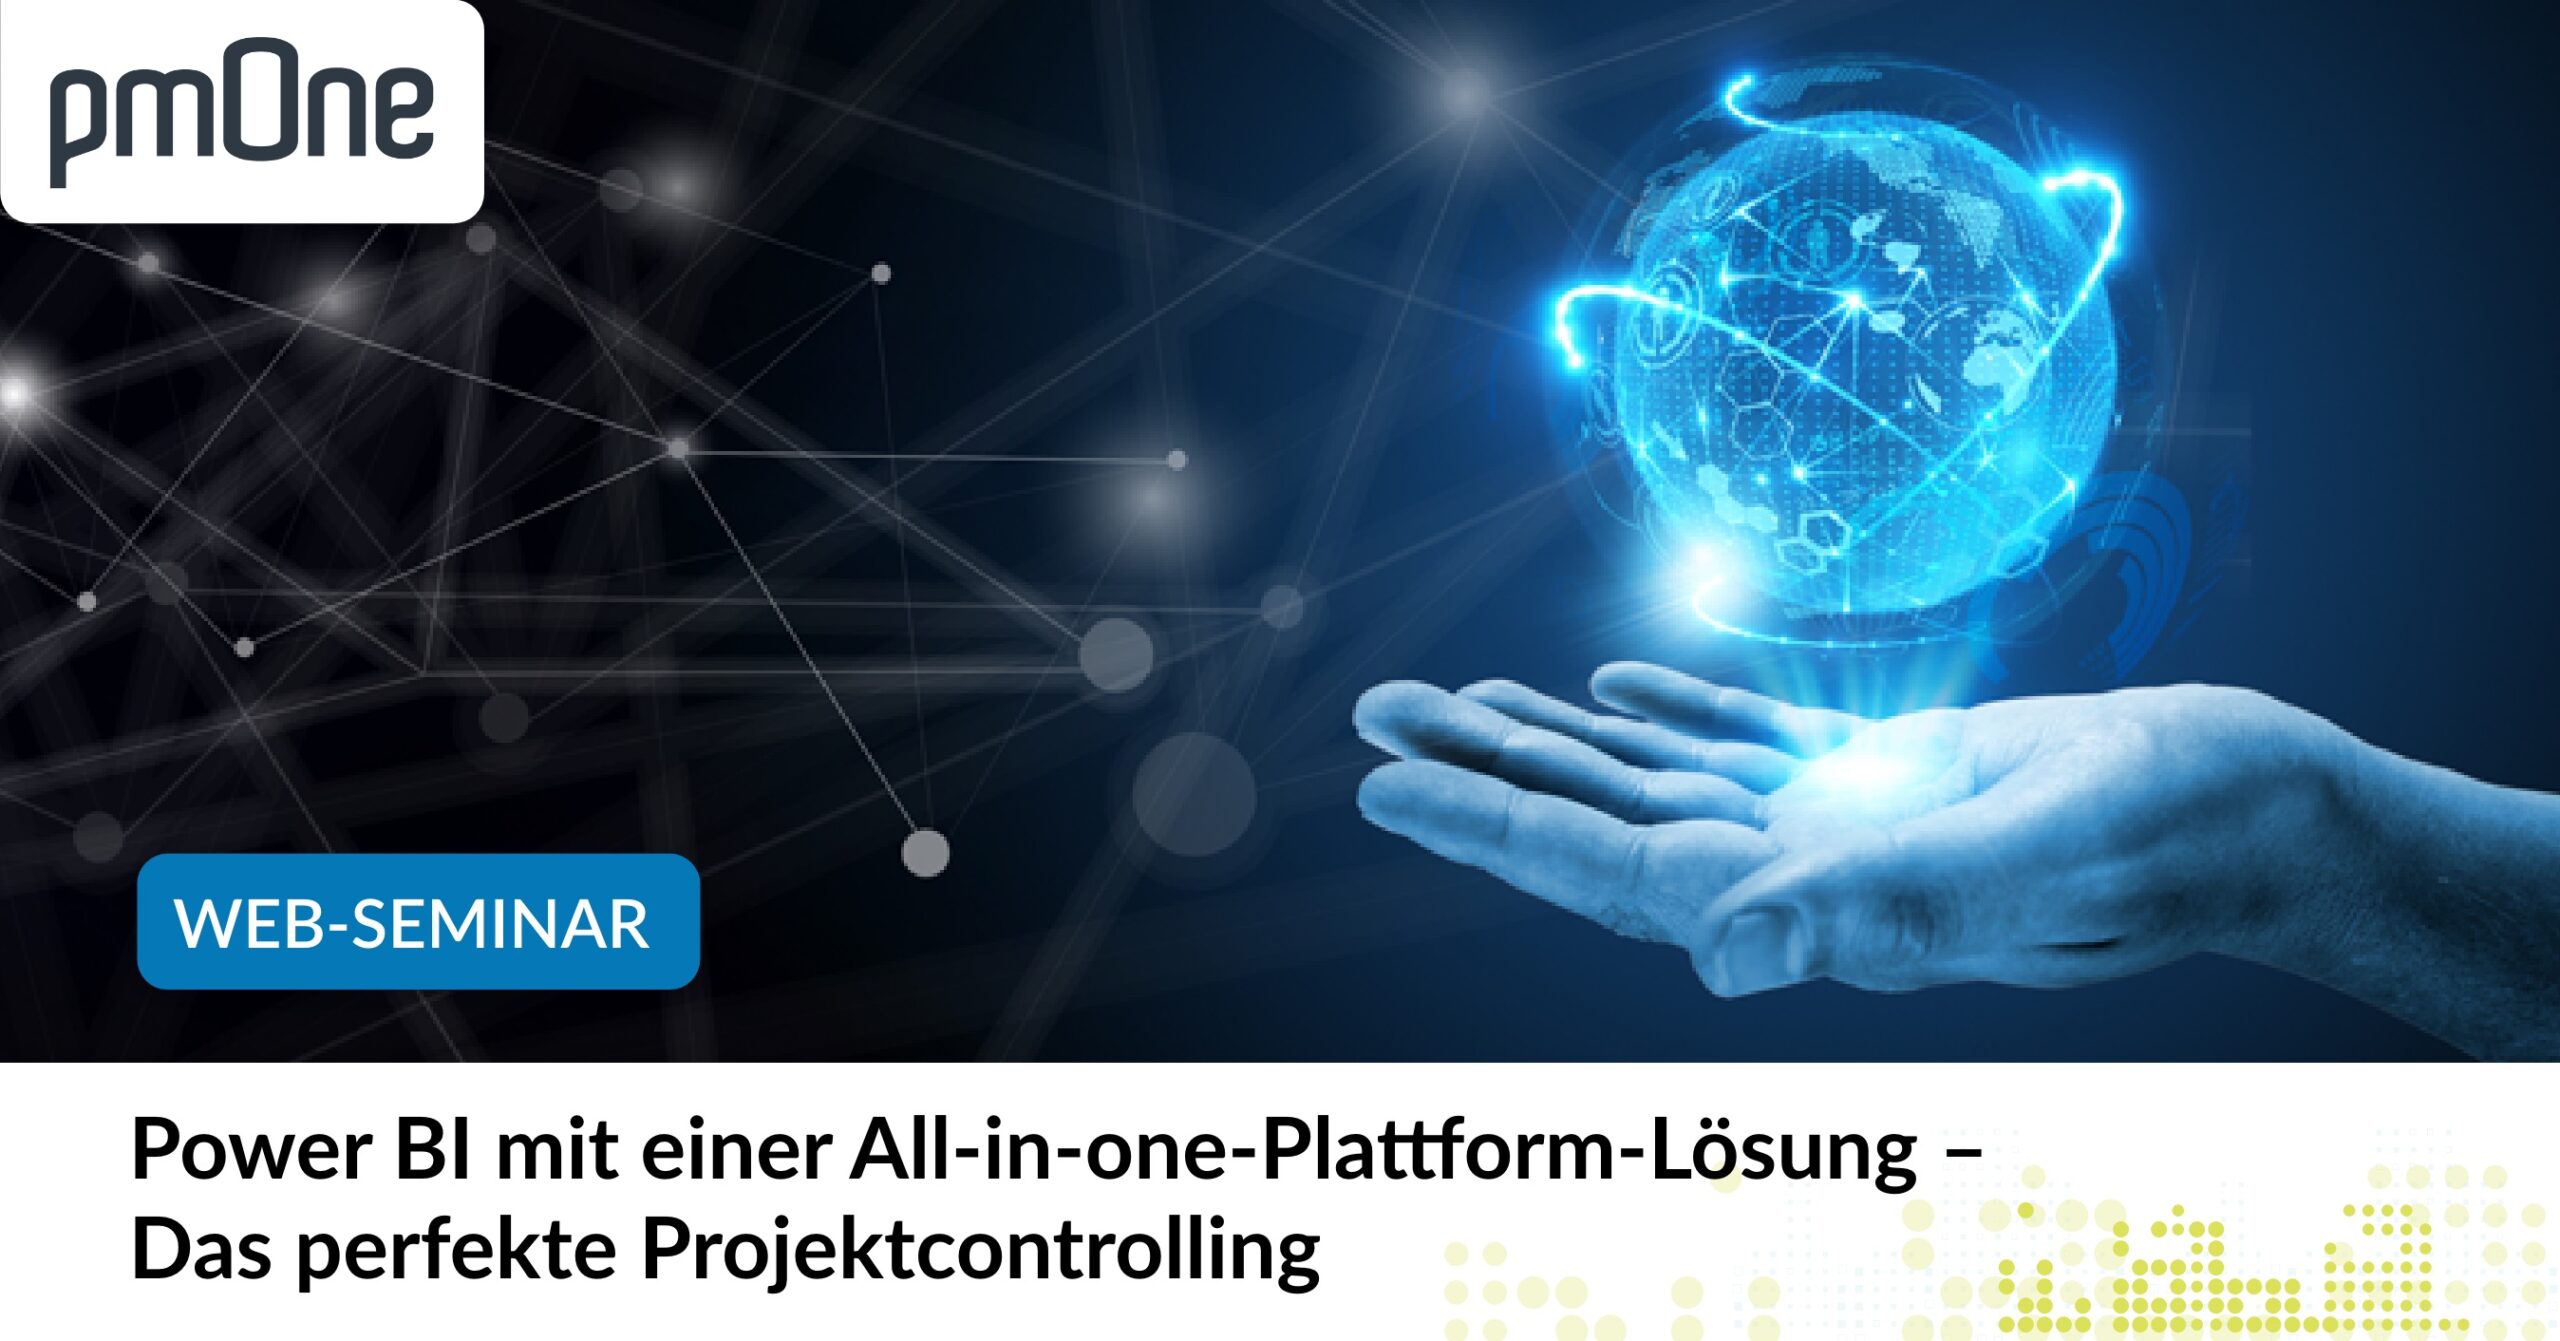 Power BI mit einer All-in-one-Plattform-Lösung – Das perfekte Projektcontrolling